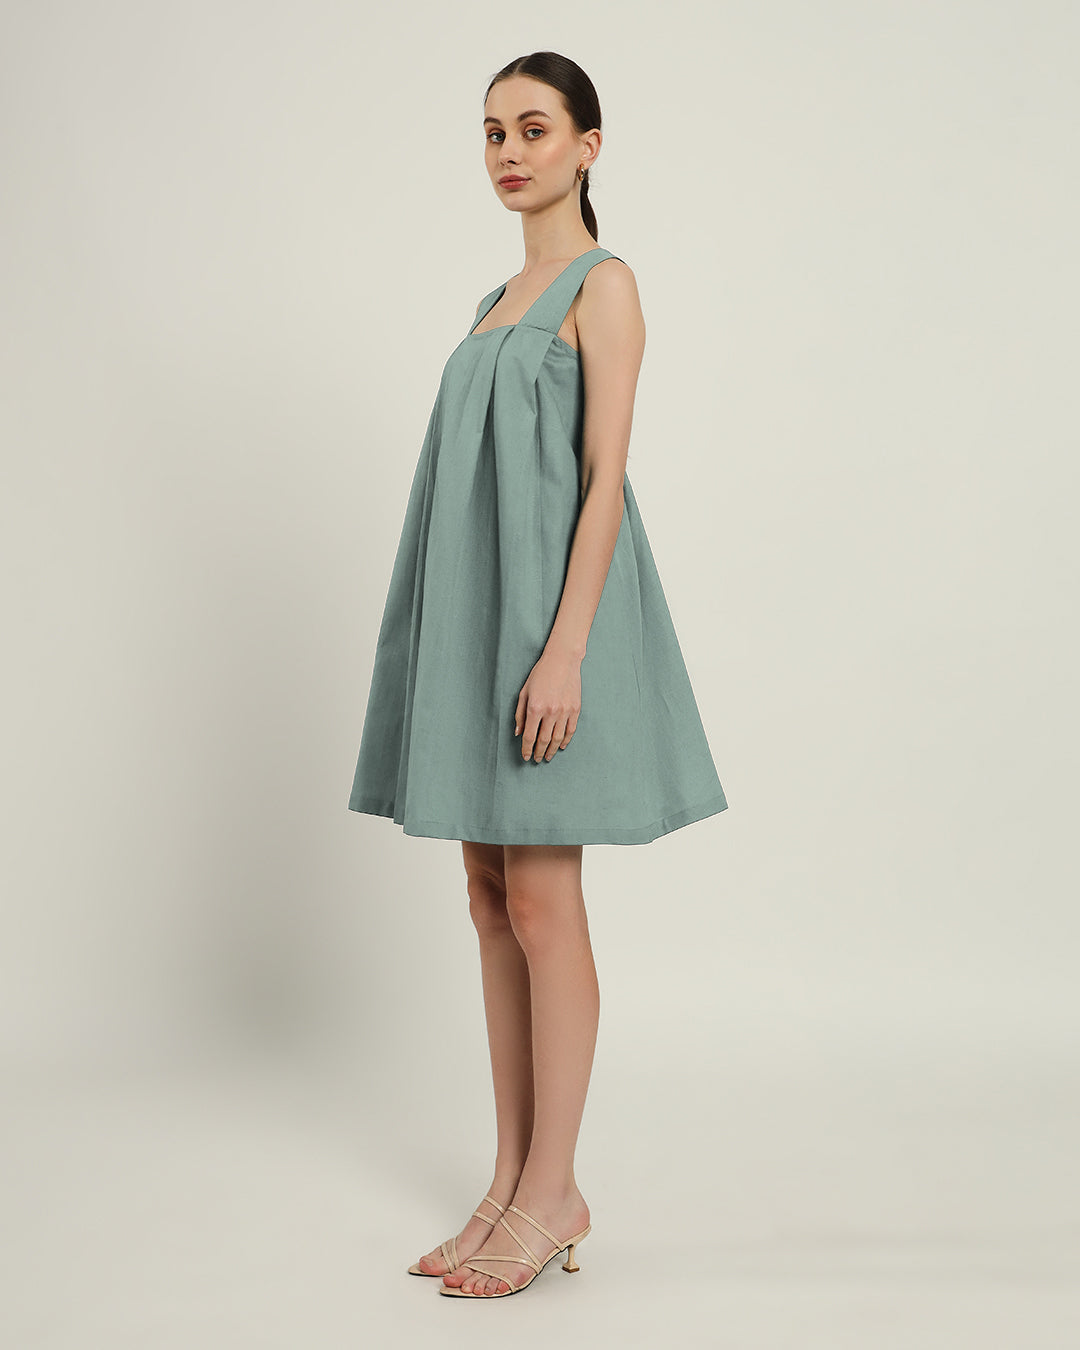 The Larissa Daisy Carolina Linen Dress